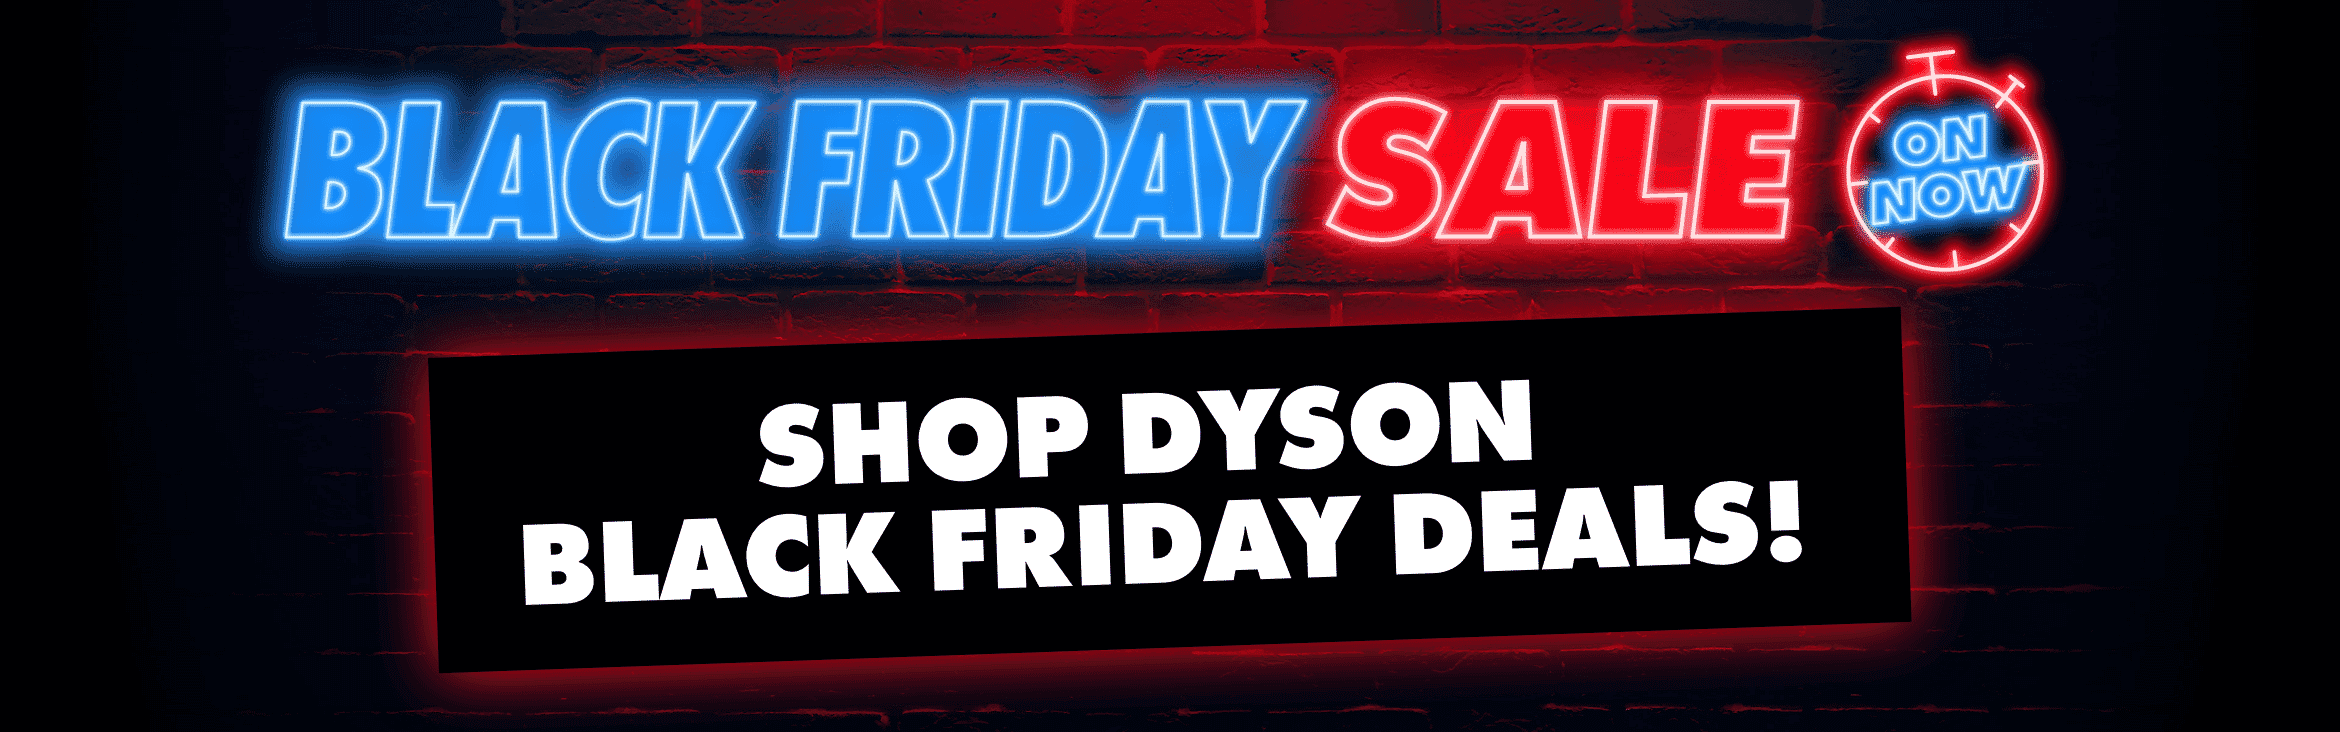 Shop Dyson Black Friday Deals.